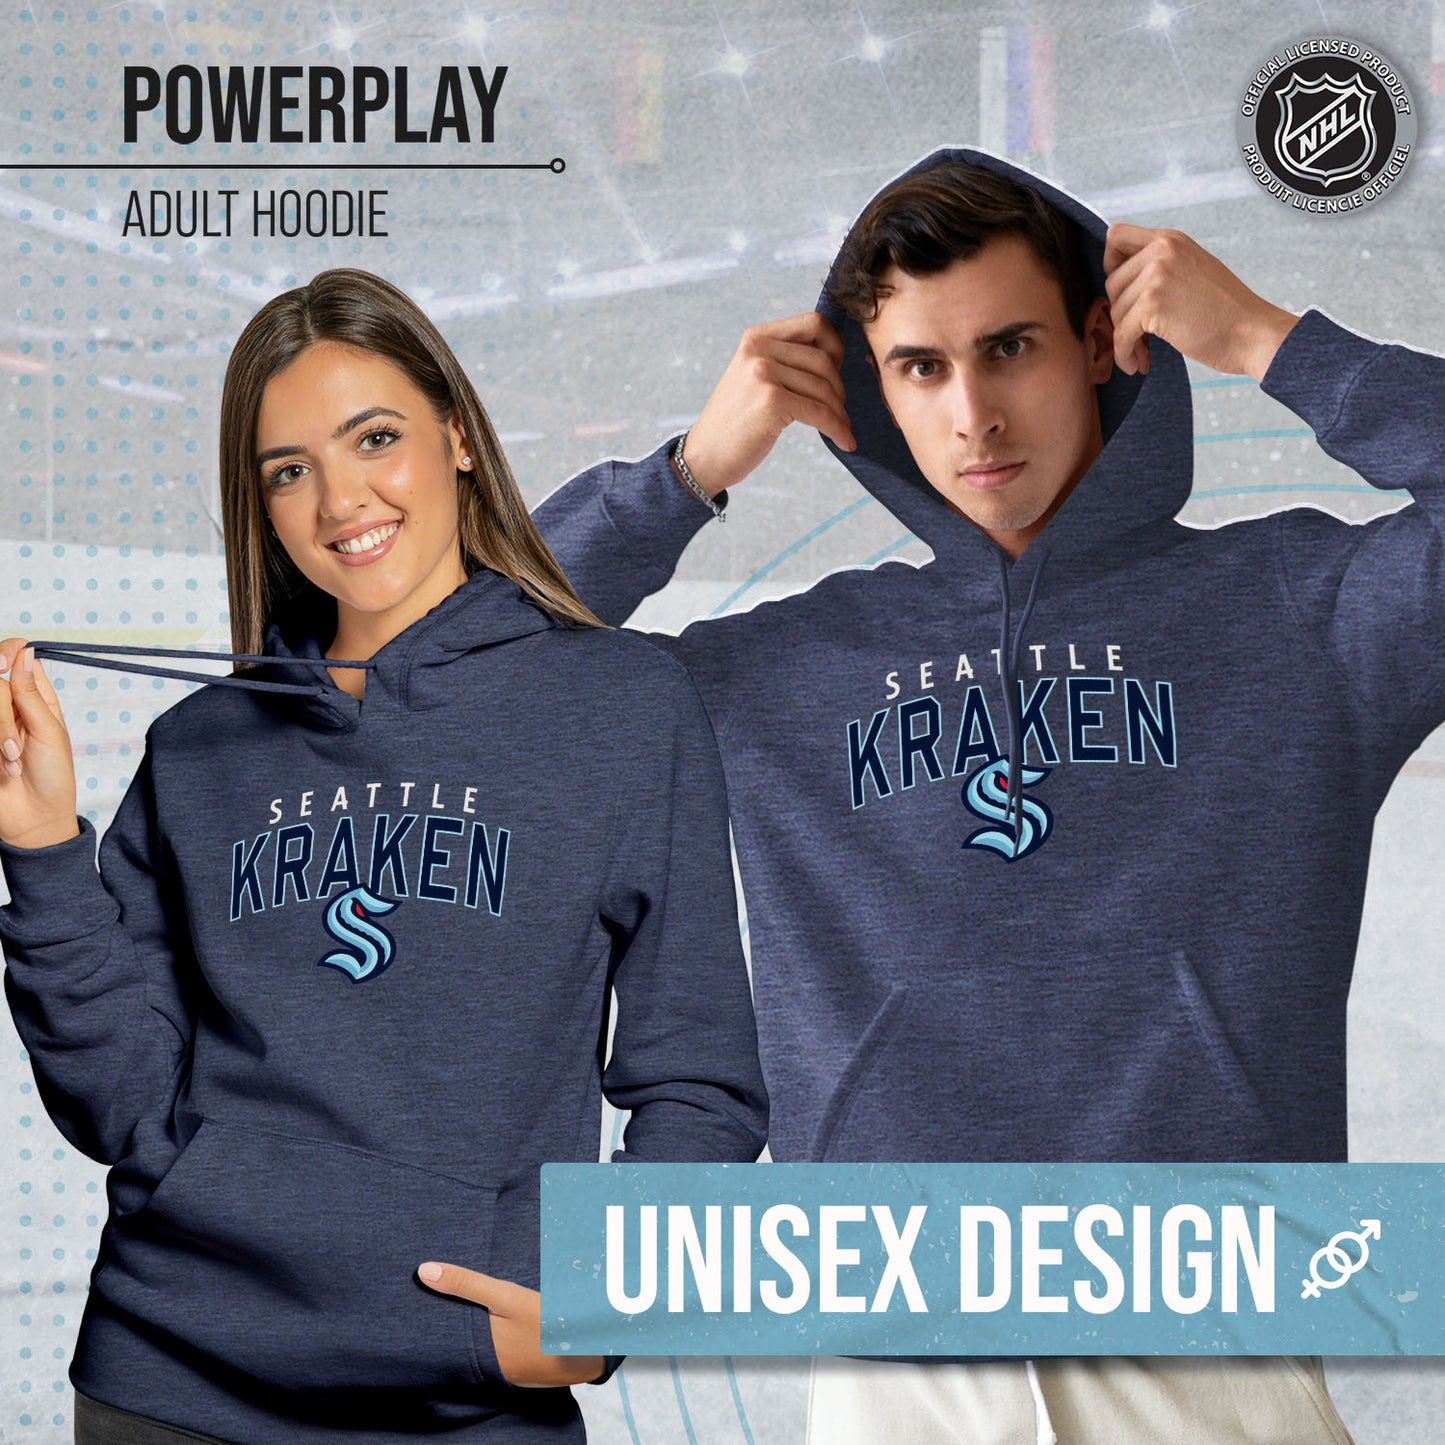 Seattle Kraken NHL Adult Unisex Powerplay Hooded Sweatshirt - Navy